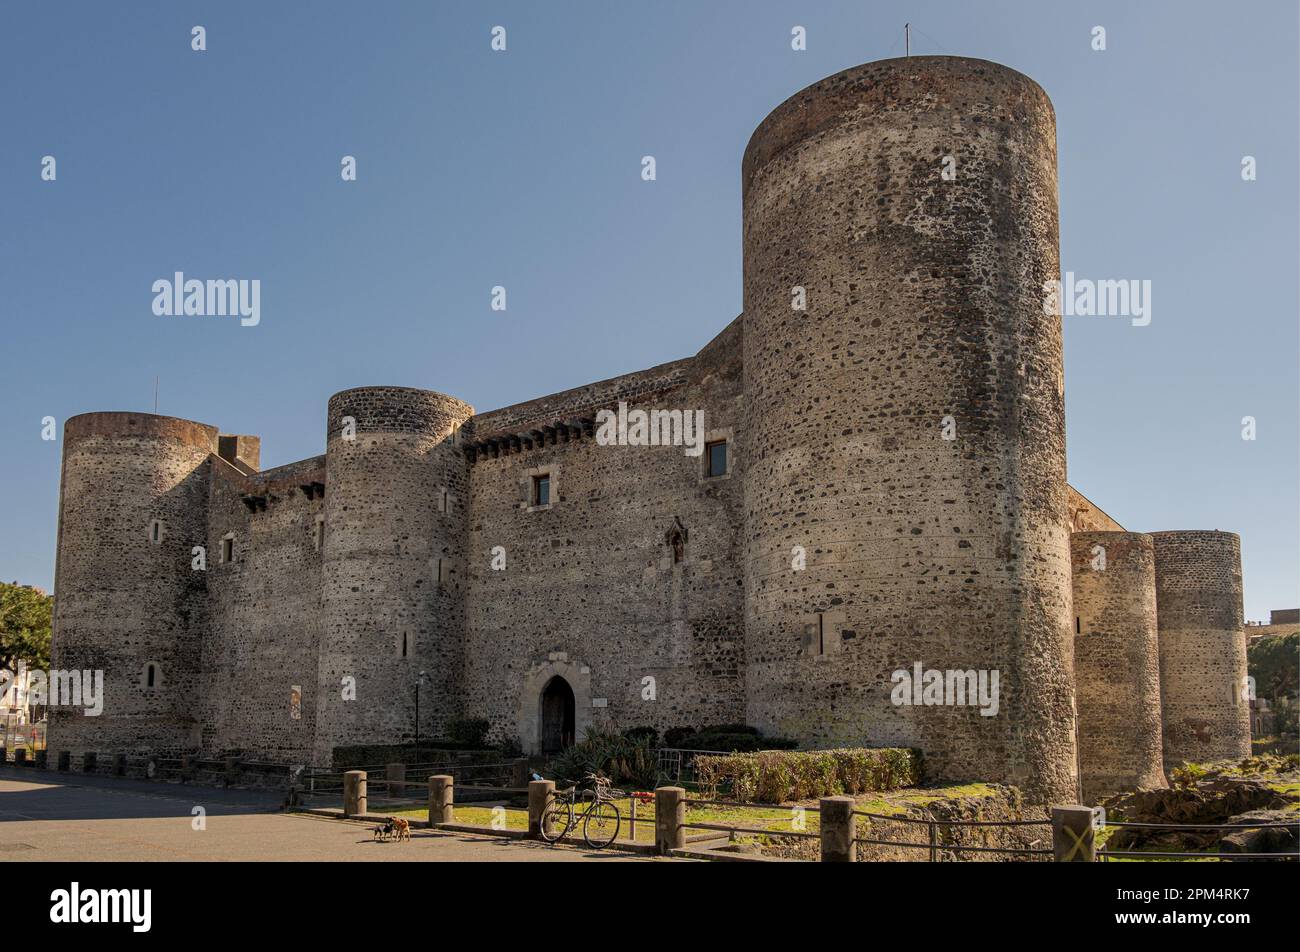 Le château d'Ursino - Castello Ursino - site médiéval de la ville de Catane, Sicile, Italie. Banque D'Images